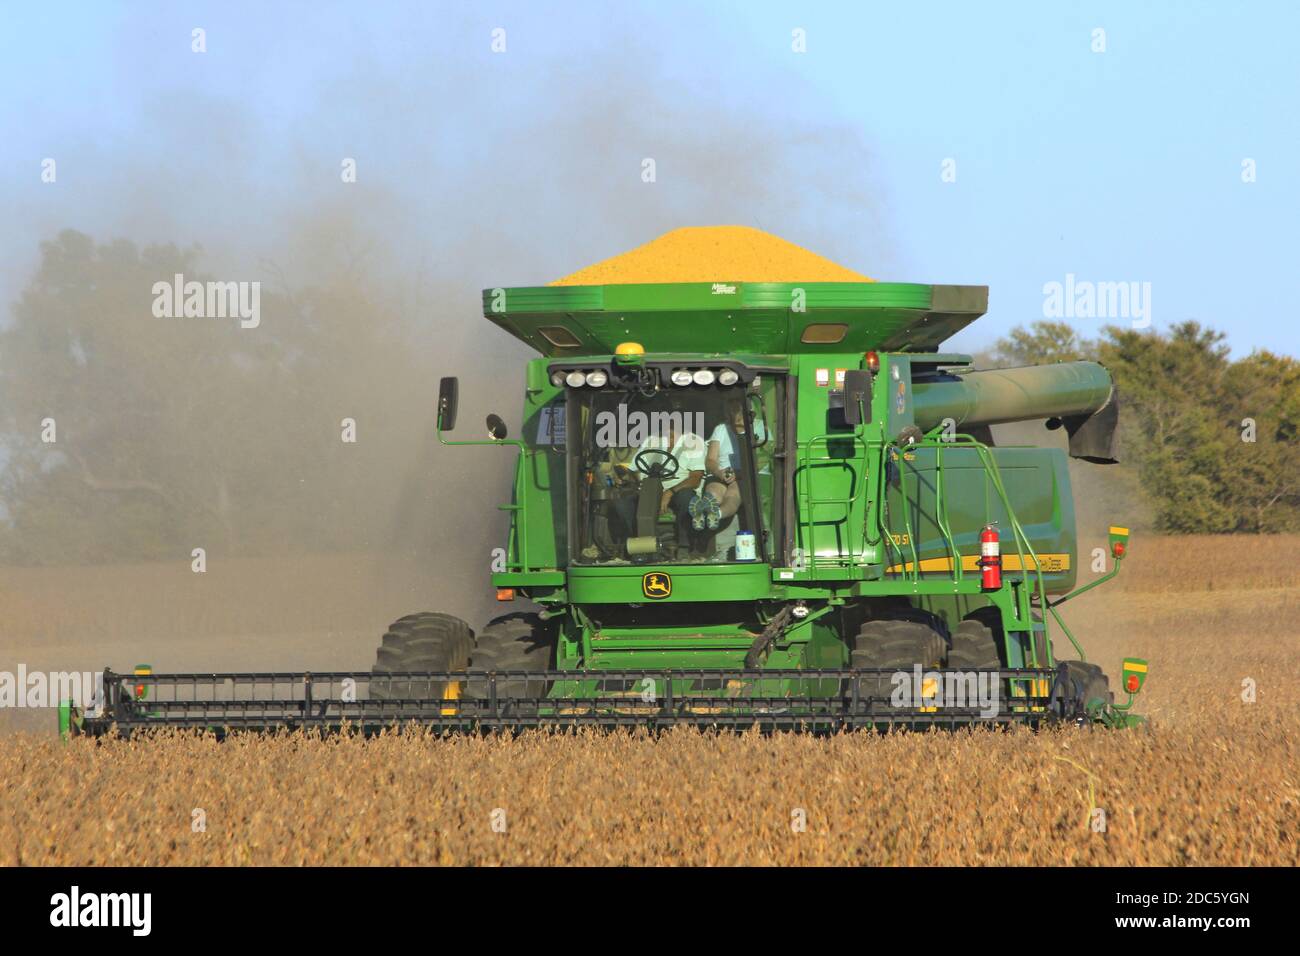 John Deere combine la coupe de fèves de soja dans un champ de ferme du Kansas avec des arbres et un ciel bleu lors d'un jour d'automne avec de la poussière dans l'air. Banque D'Images